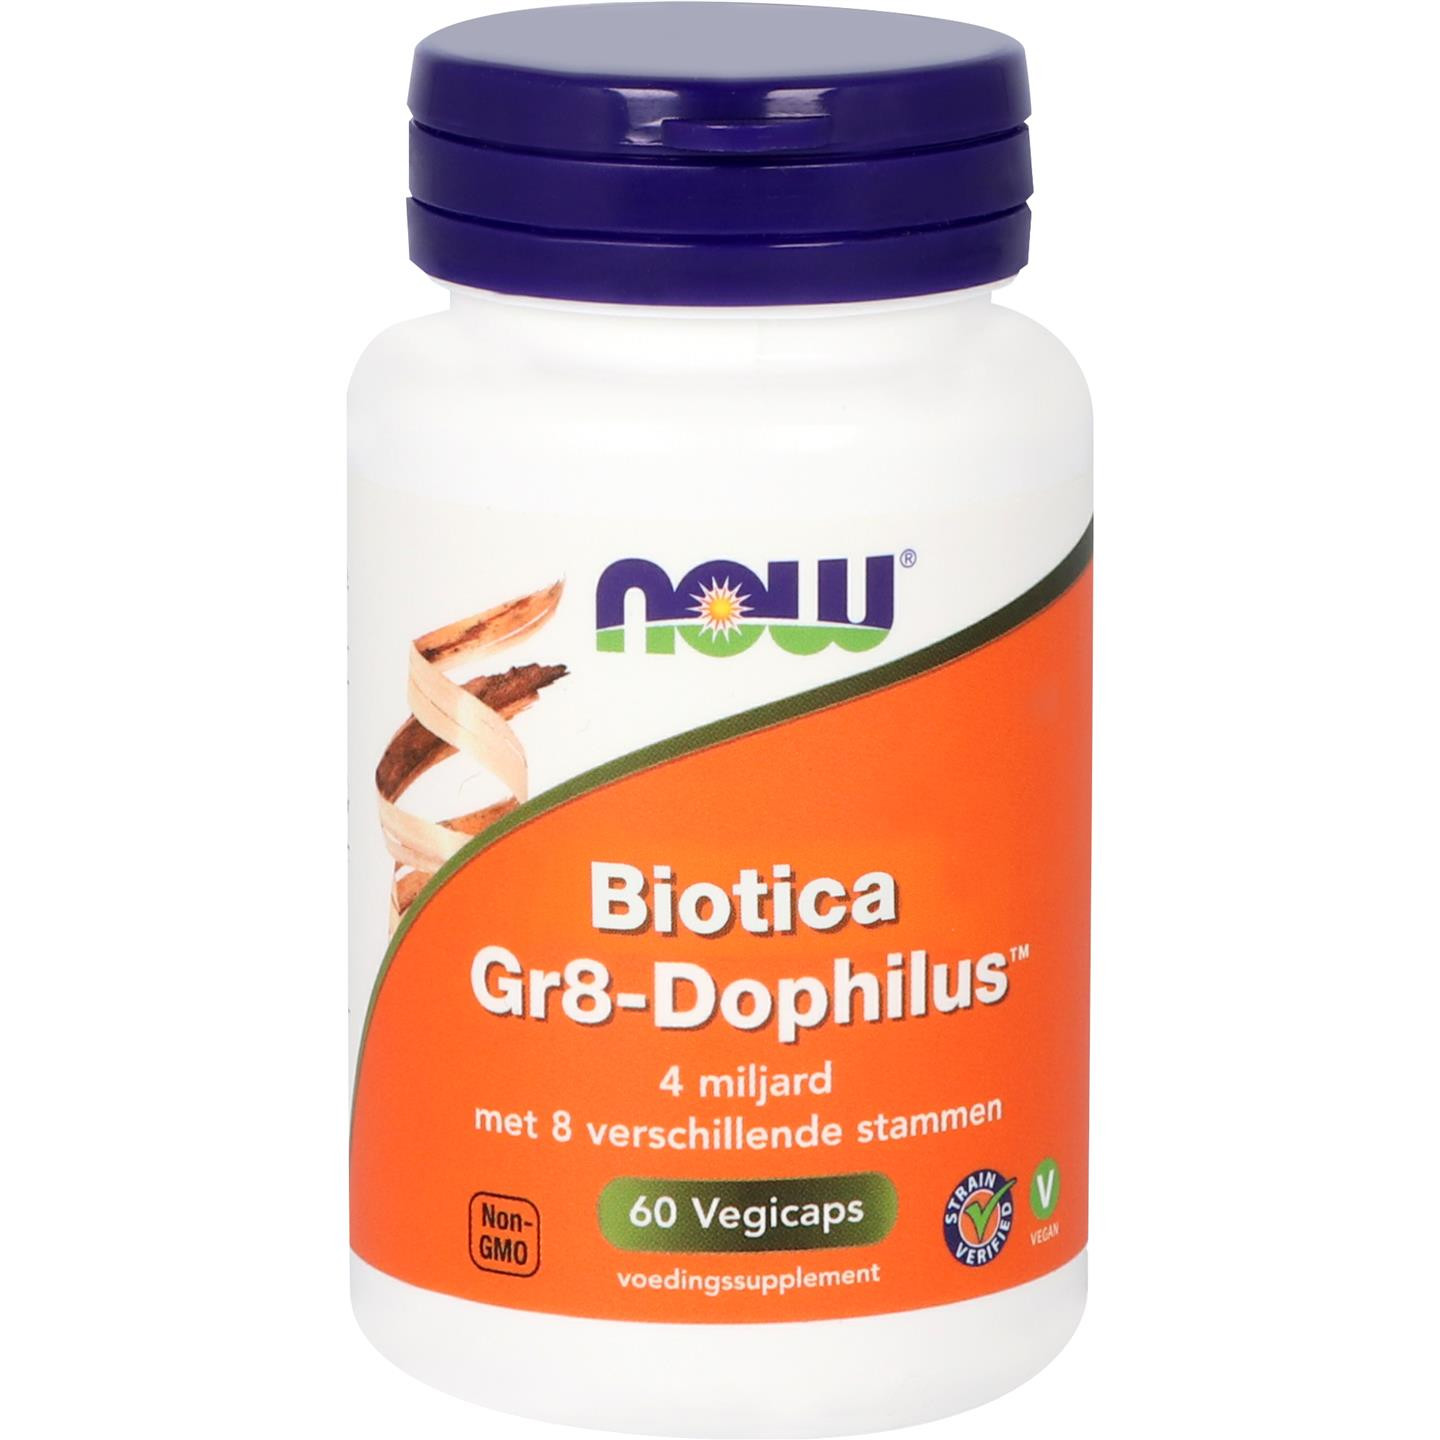 Biotica Gr8-Dophilus